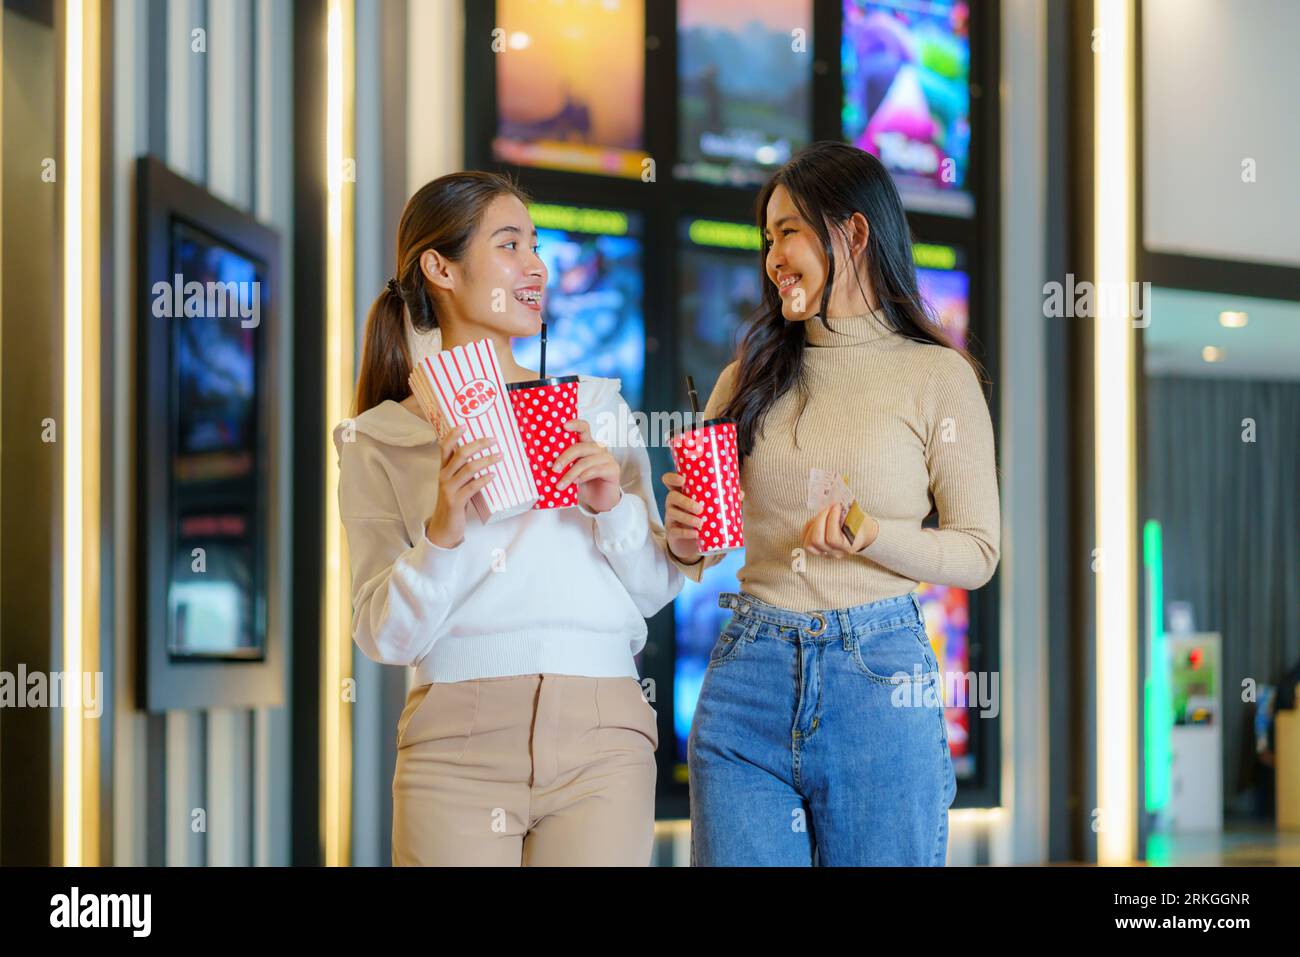 Amici asiatici, popcorn in mano, passeggiate gioiosamente di fronte al cinema, incarnando l'amicizia e l'attesa piena di divertimento per un divertente serata cinematografica Foto Stock